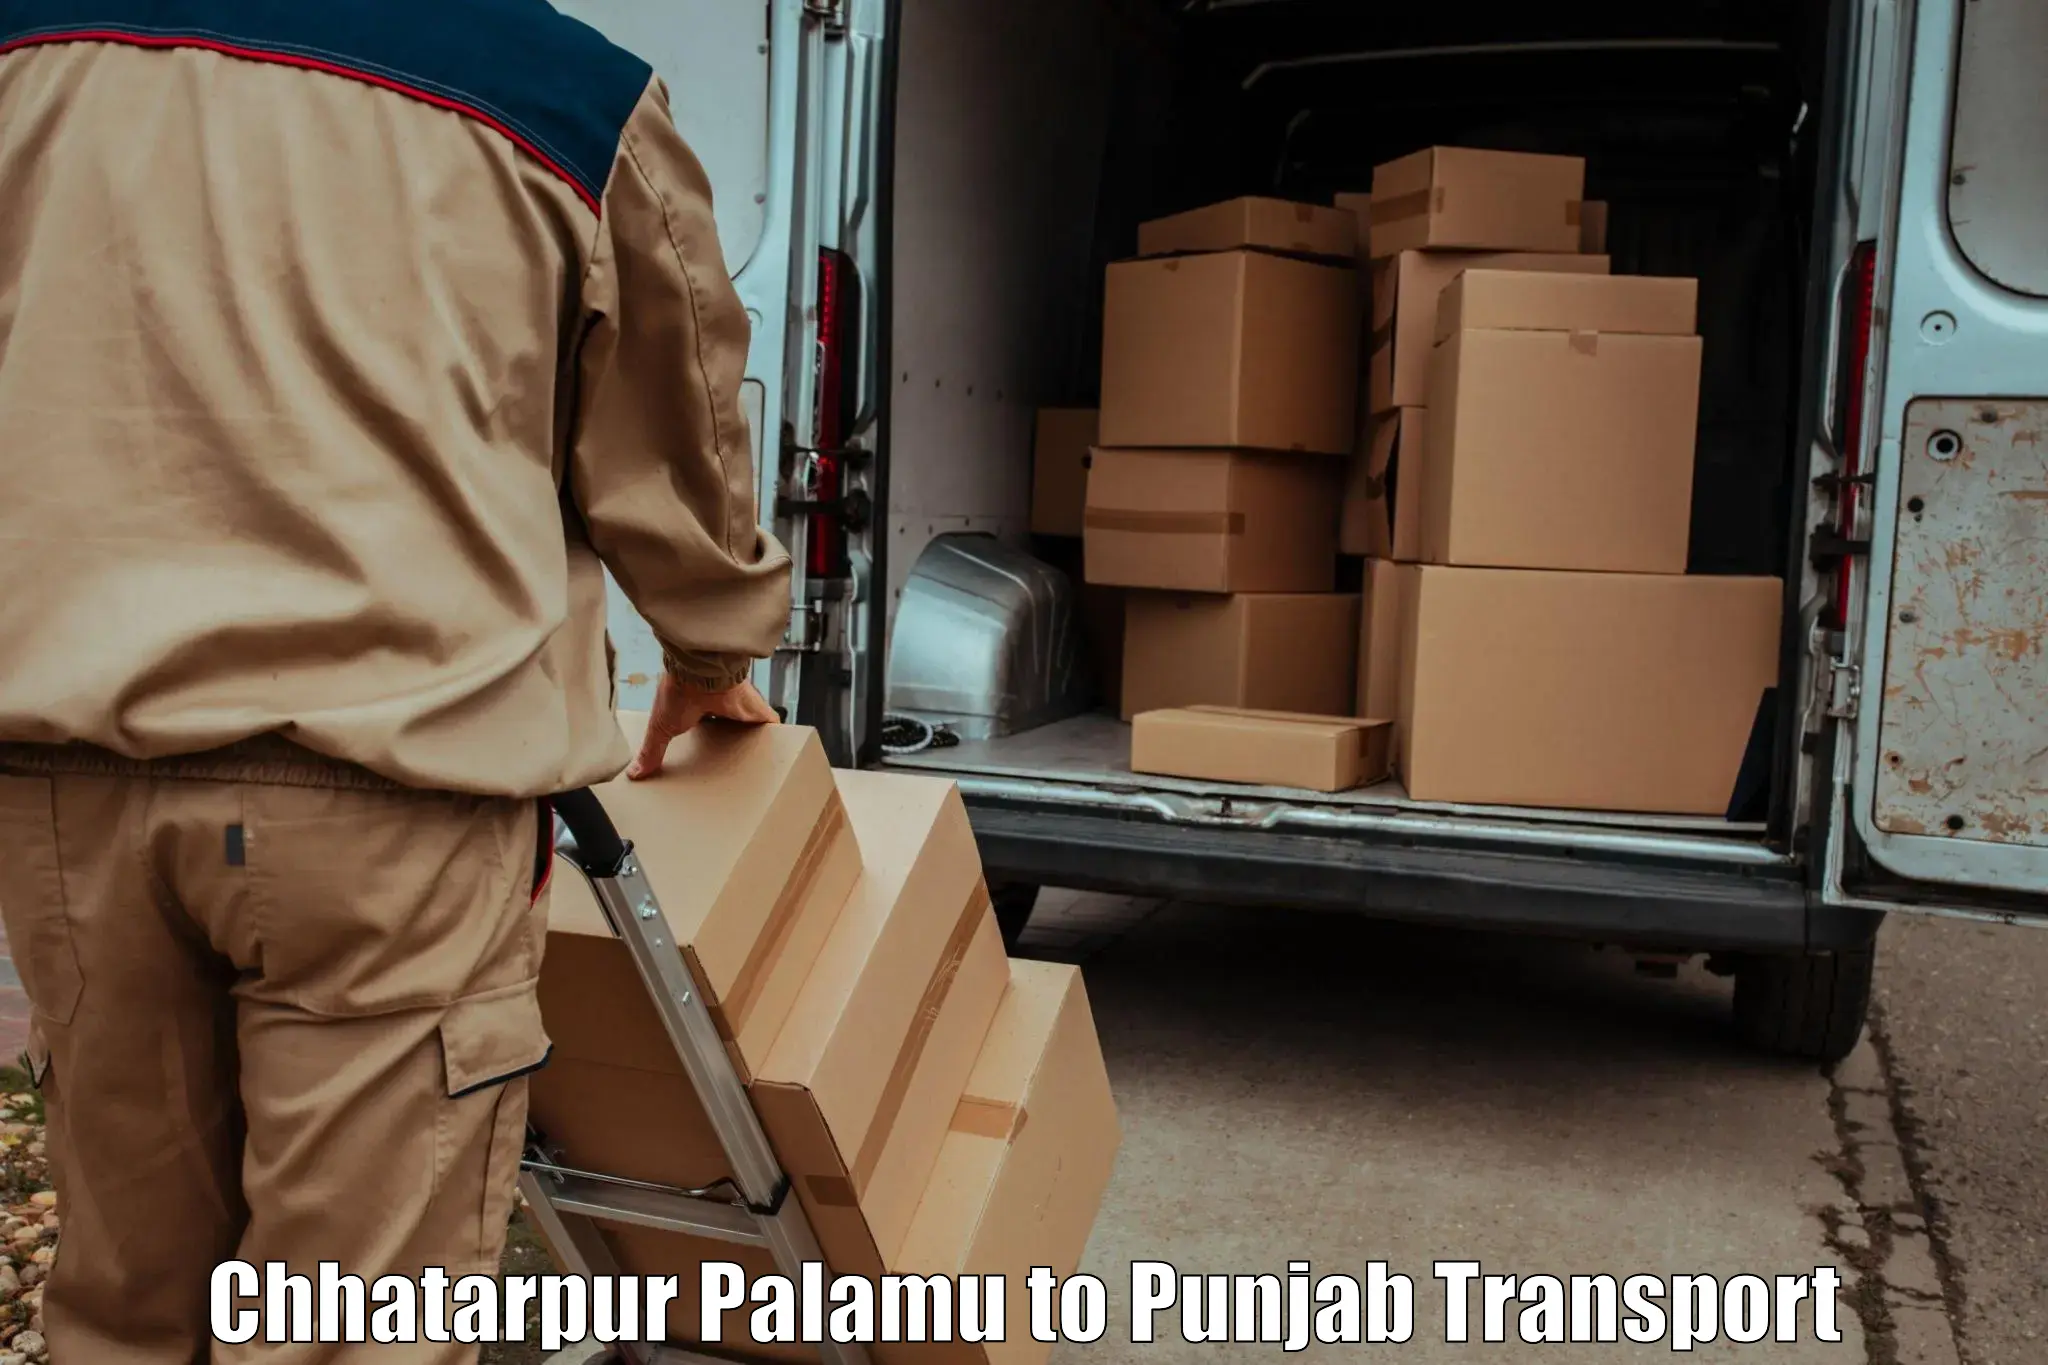 Intercity transport Chhatarpur Palamu to Kapurthala